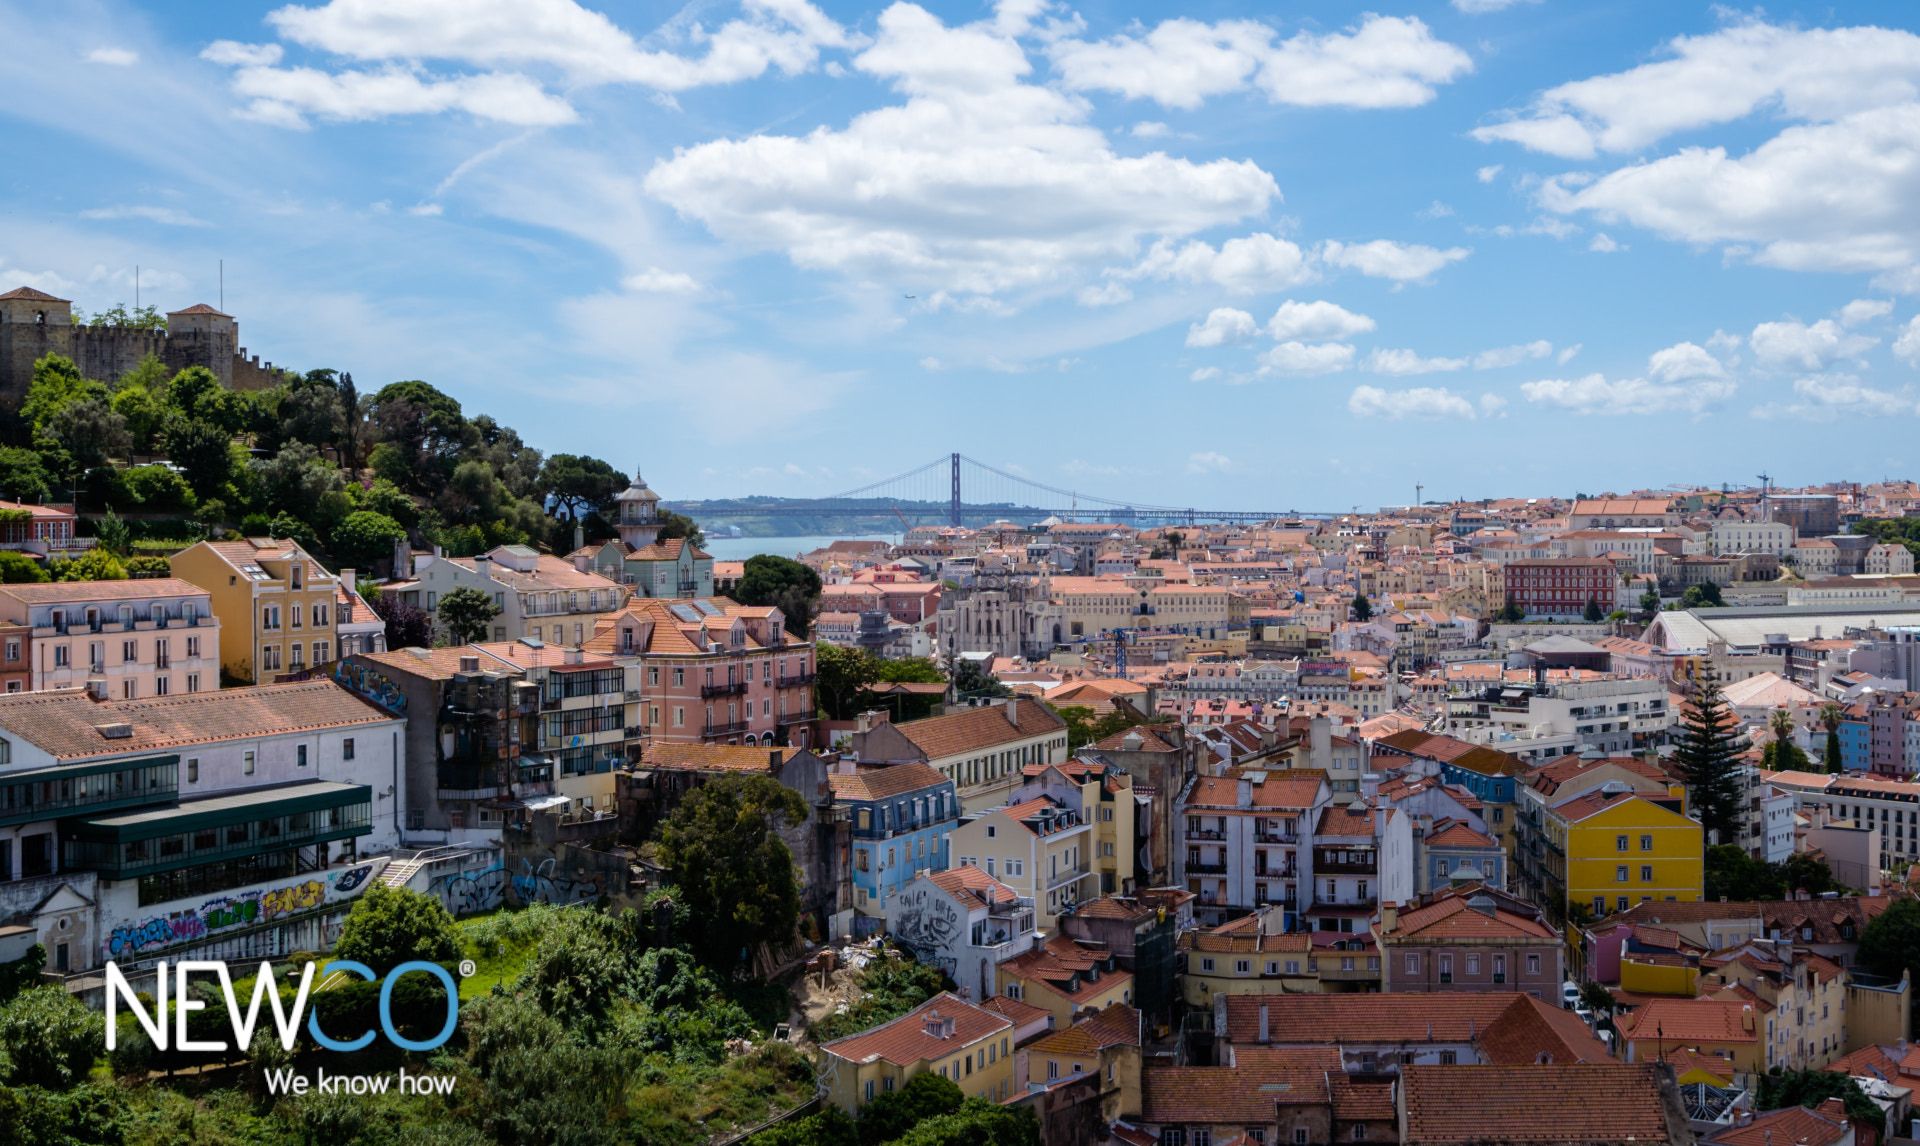 Trabalhar como freelancer ou criar uma empresa em Portugal - qual é a melhor opção?